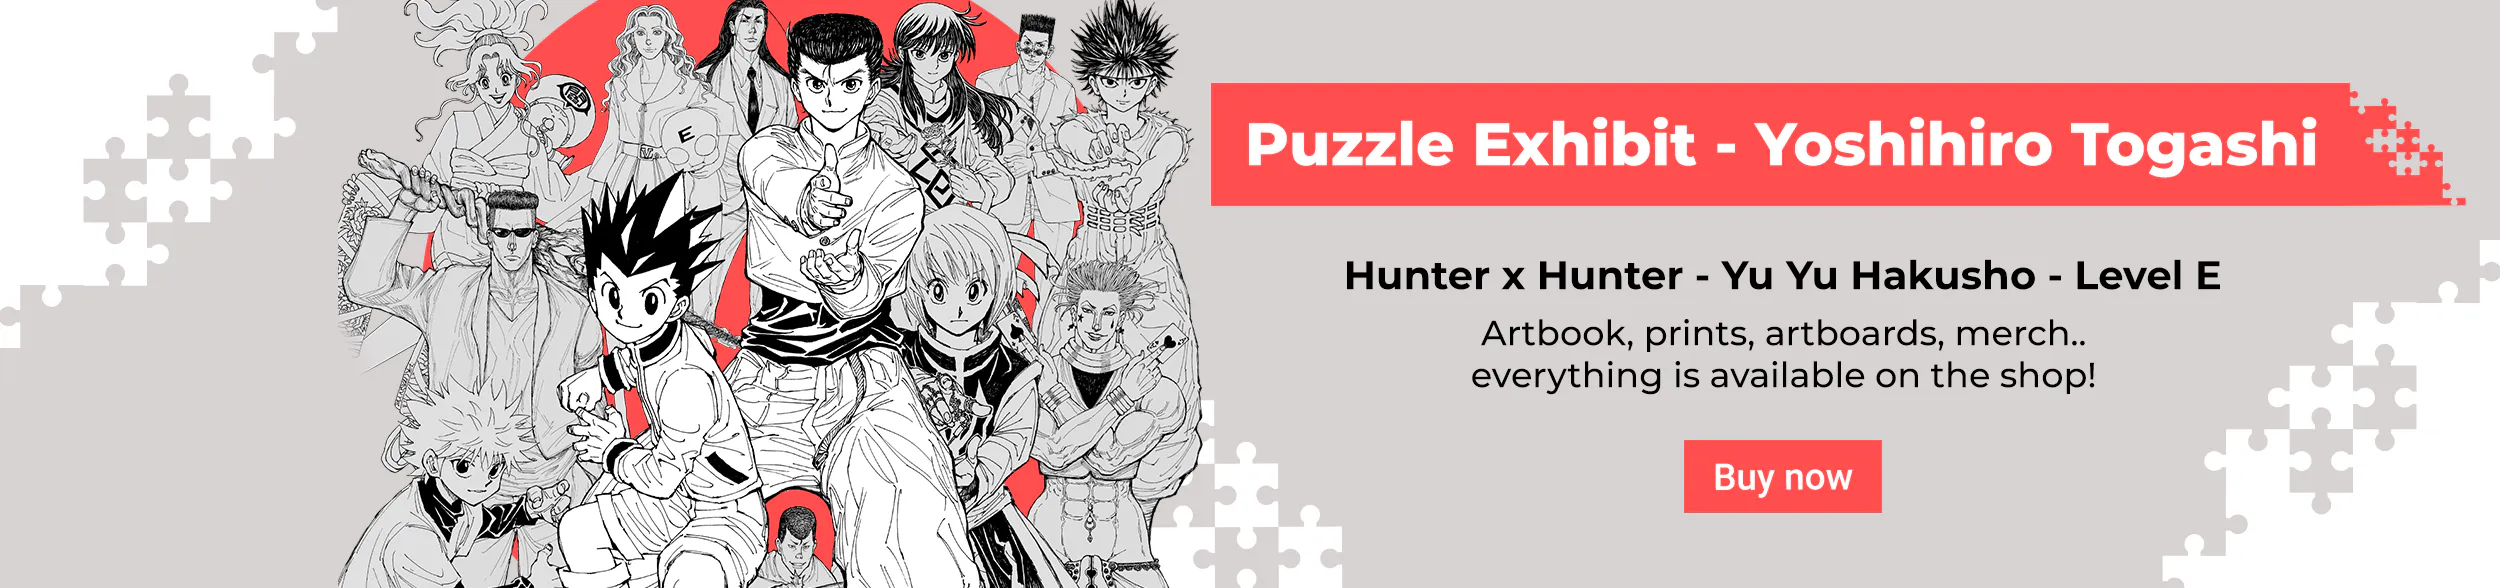 Artbooks, pratos, estatuetas, brindes, mangás e a exposição oficial de Hunter x Hunter e Yu Yu Hakusho!